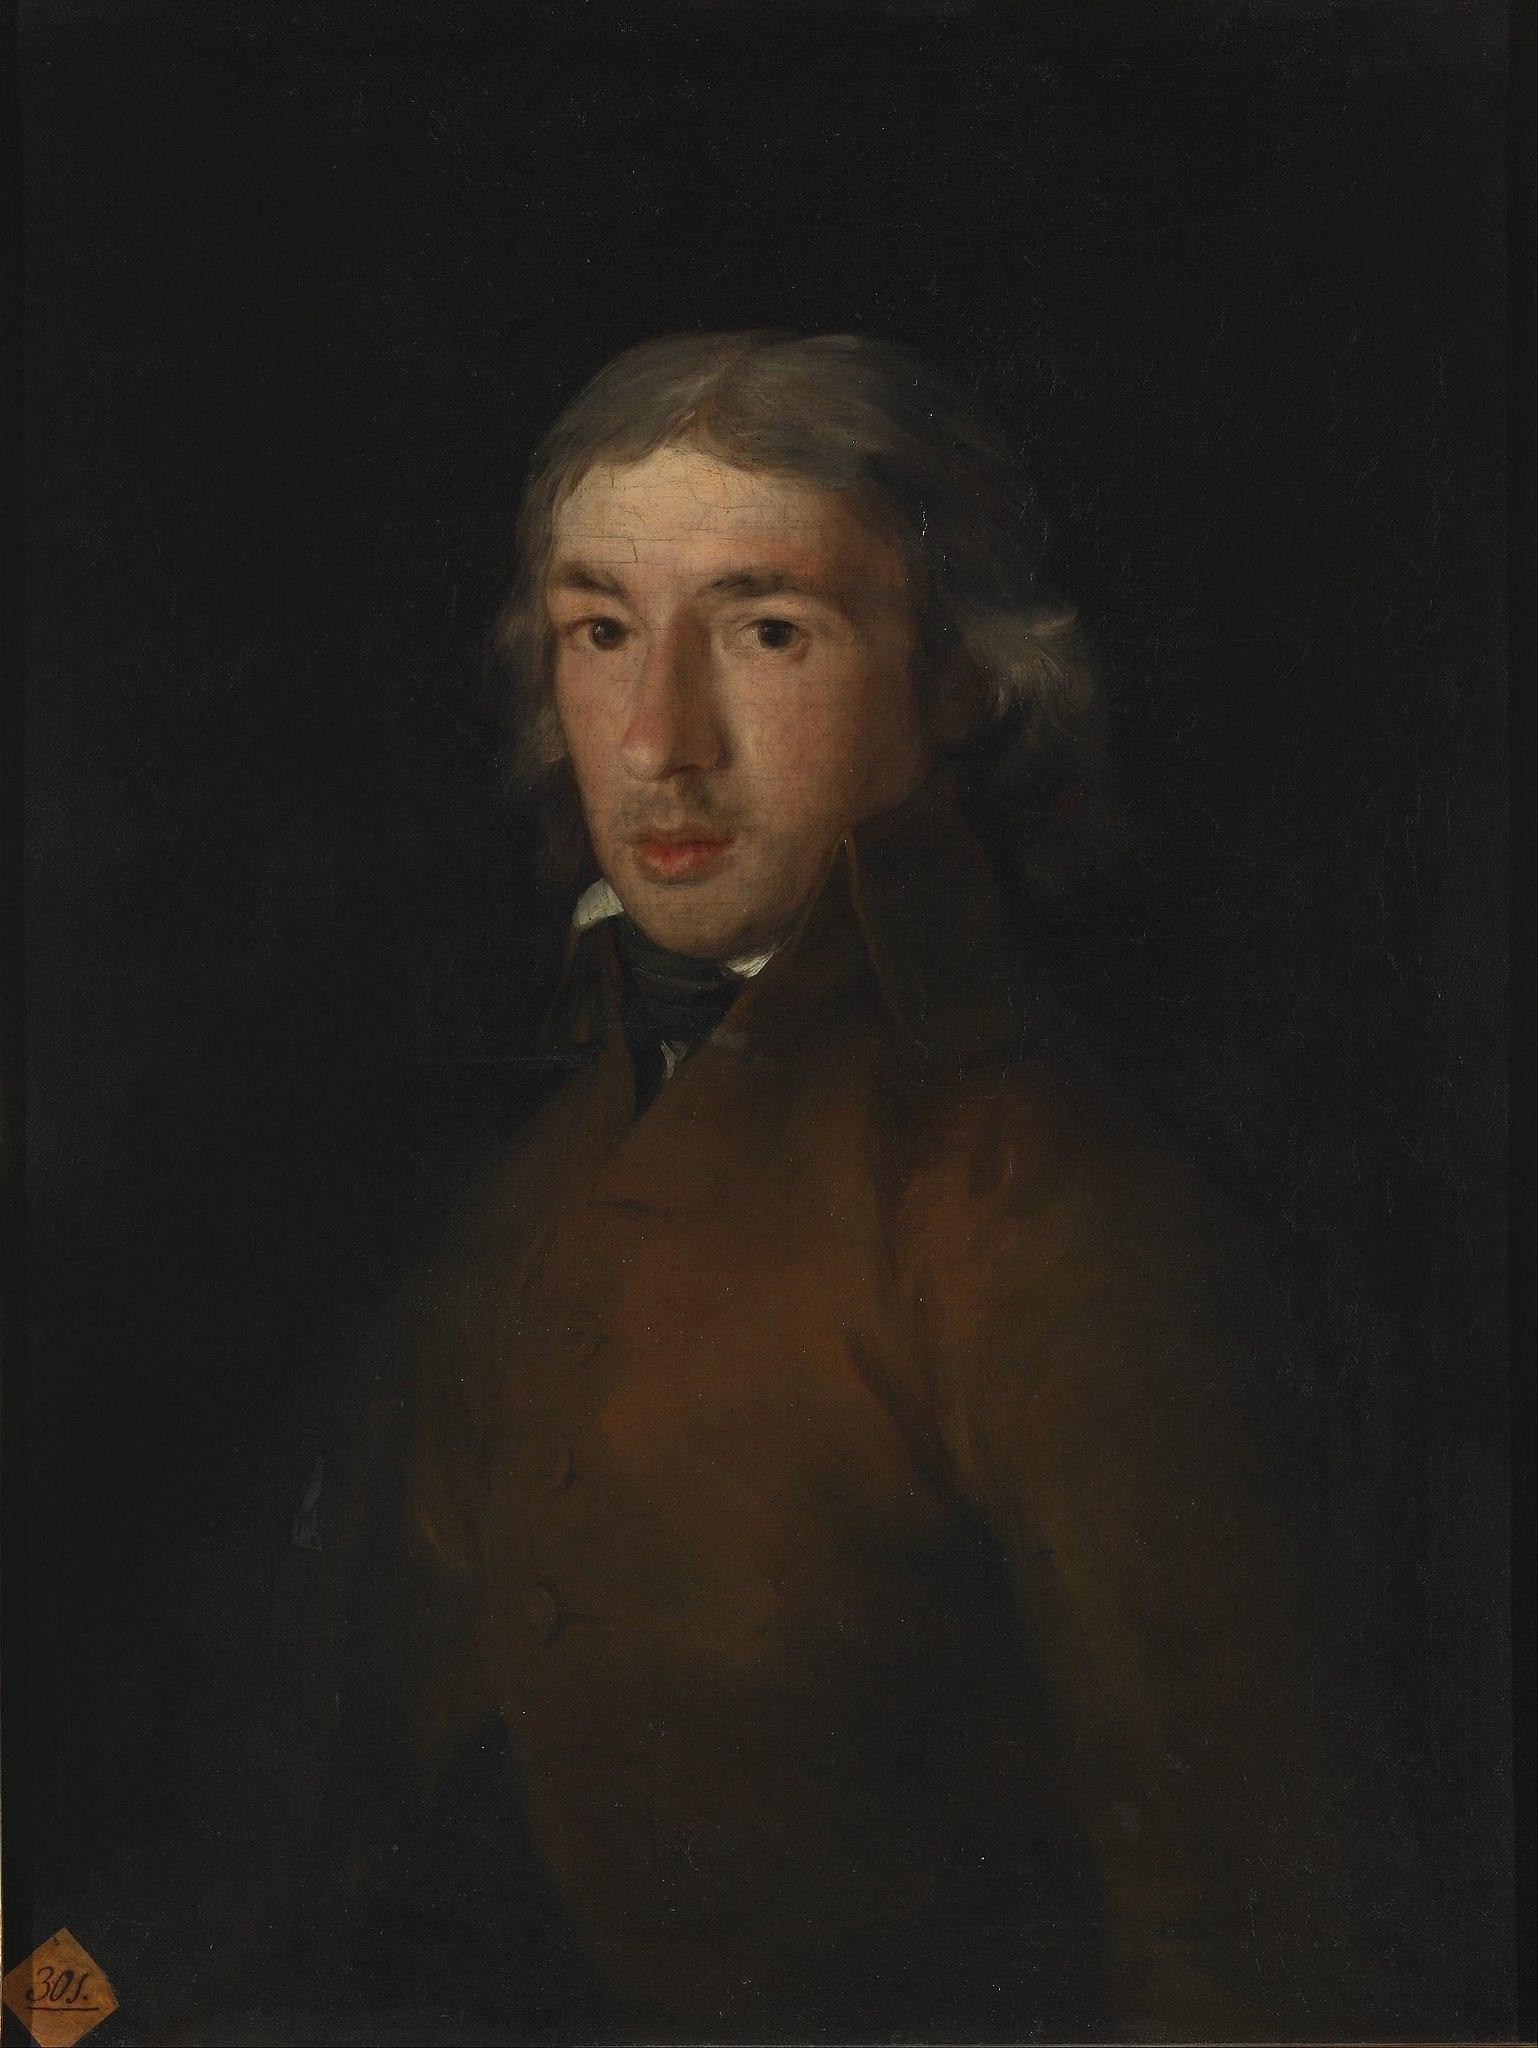 Leandro Fernández de Moratín (1799) retratado por Goya